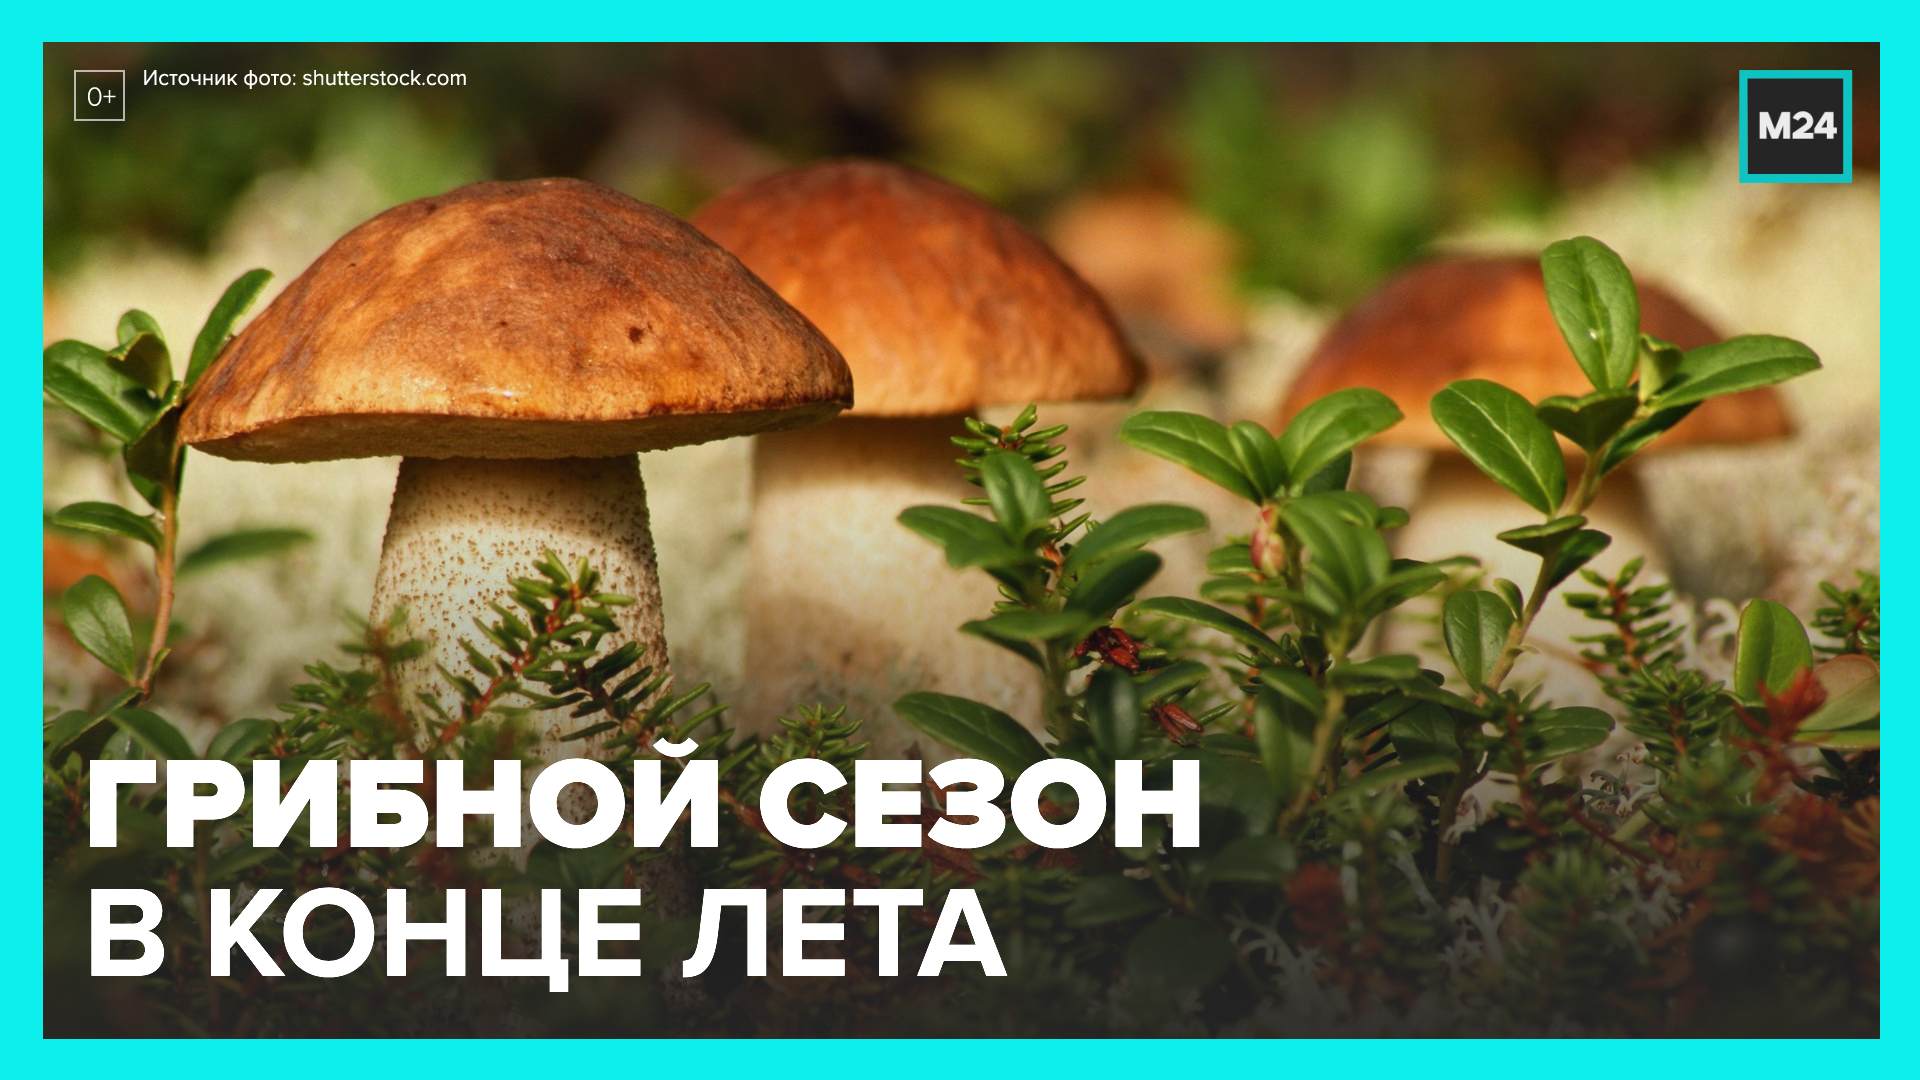 Грибной сезон в подмосковных лесах начнется во второй половине августа - Москва 24